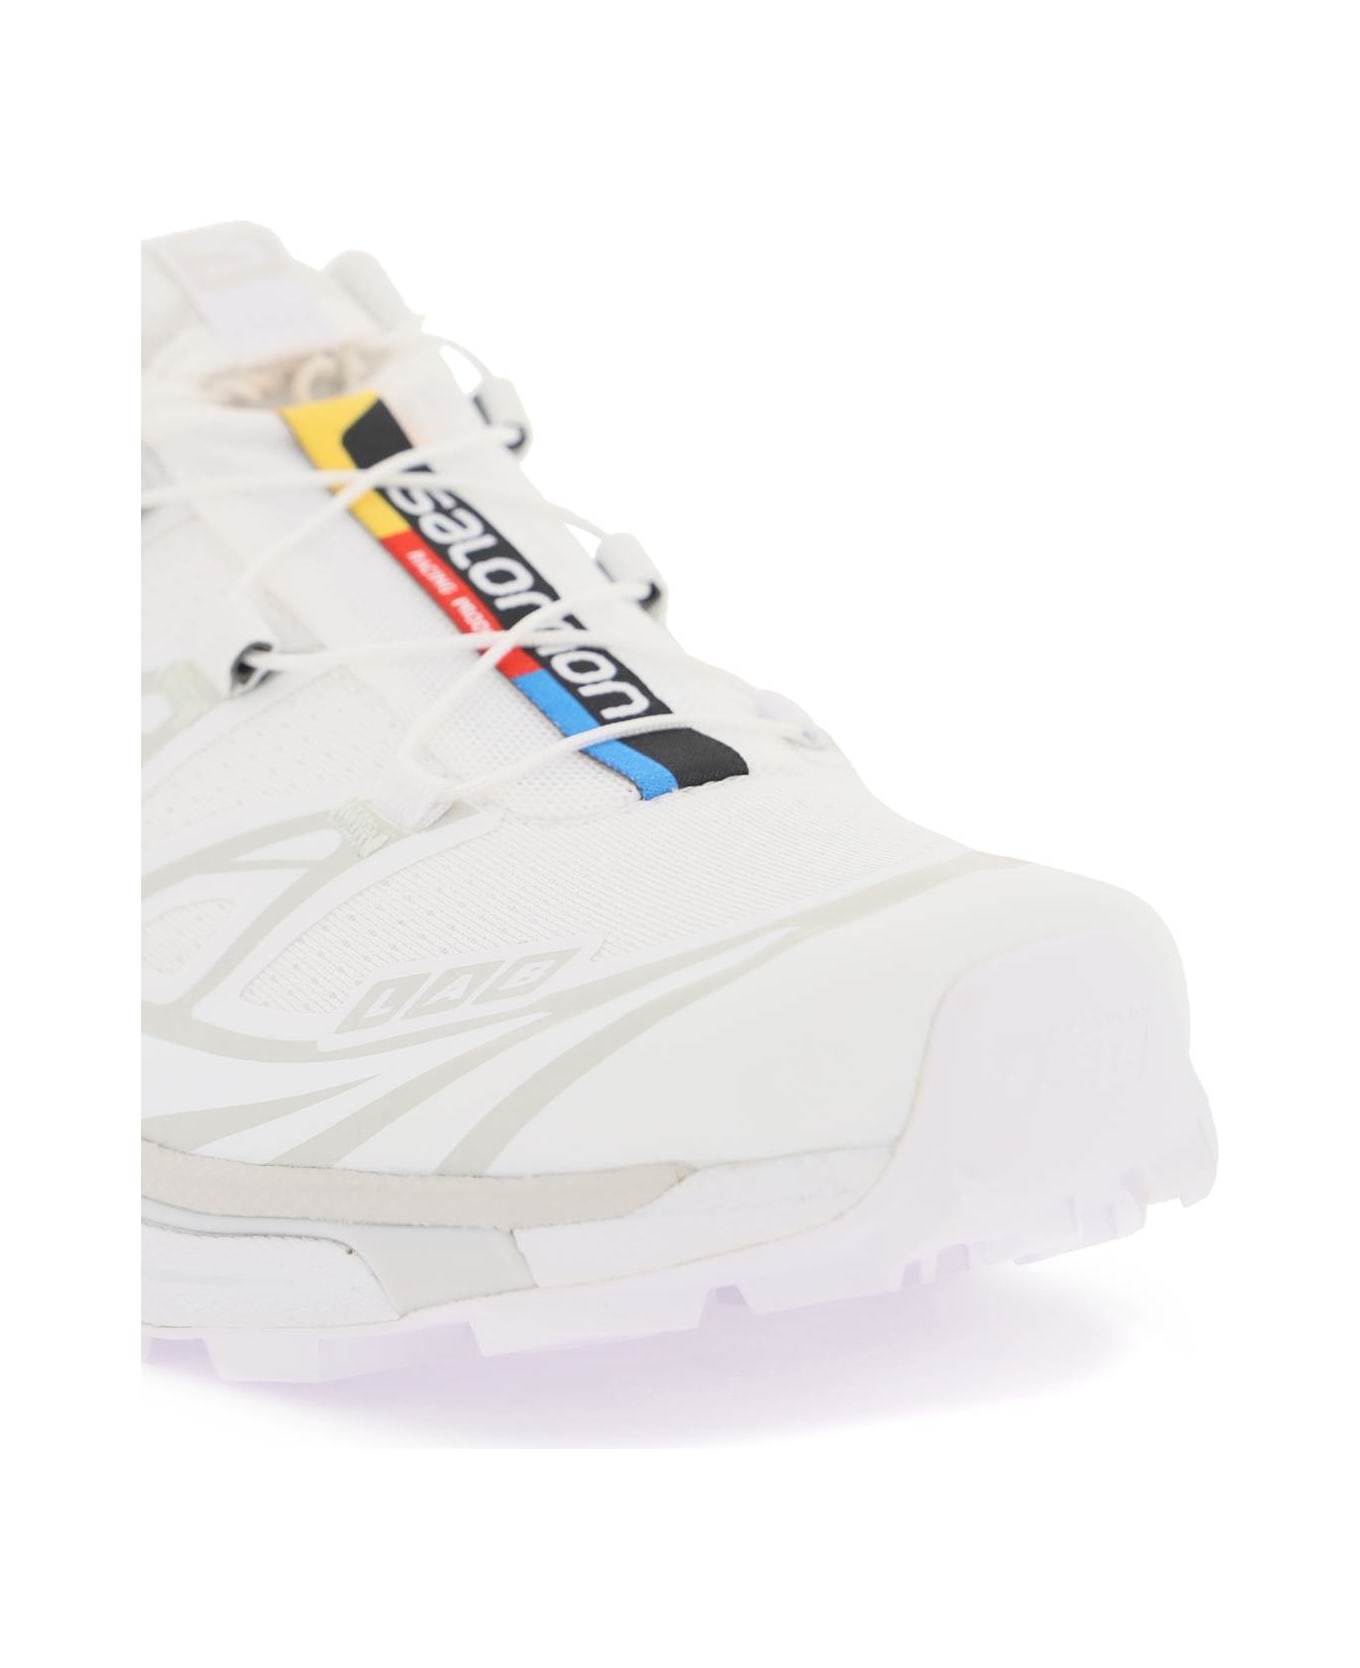 Salomon Xt-6 Sneakers - WHITE WHITE LUNAR ROCK (White)